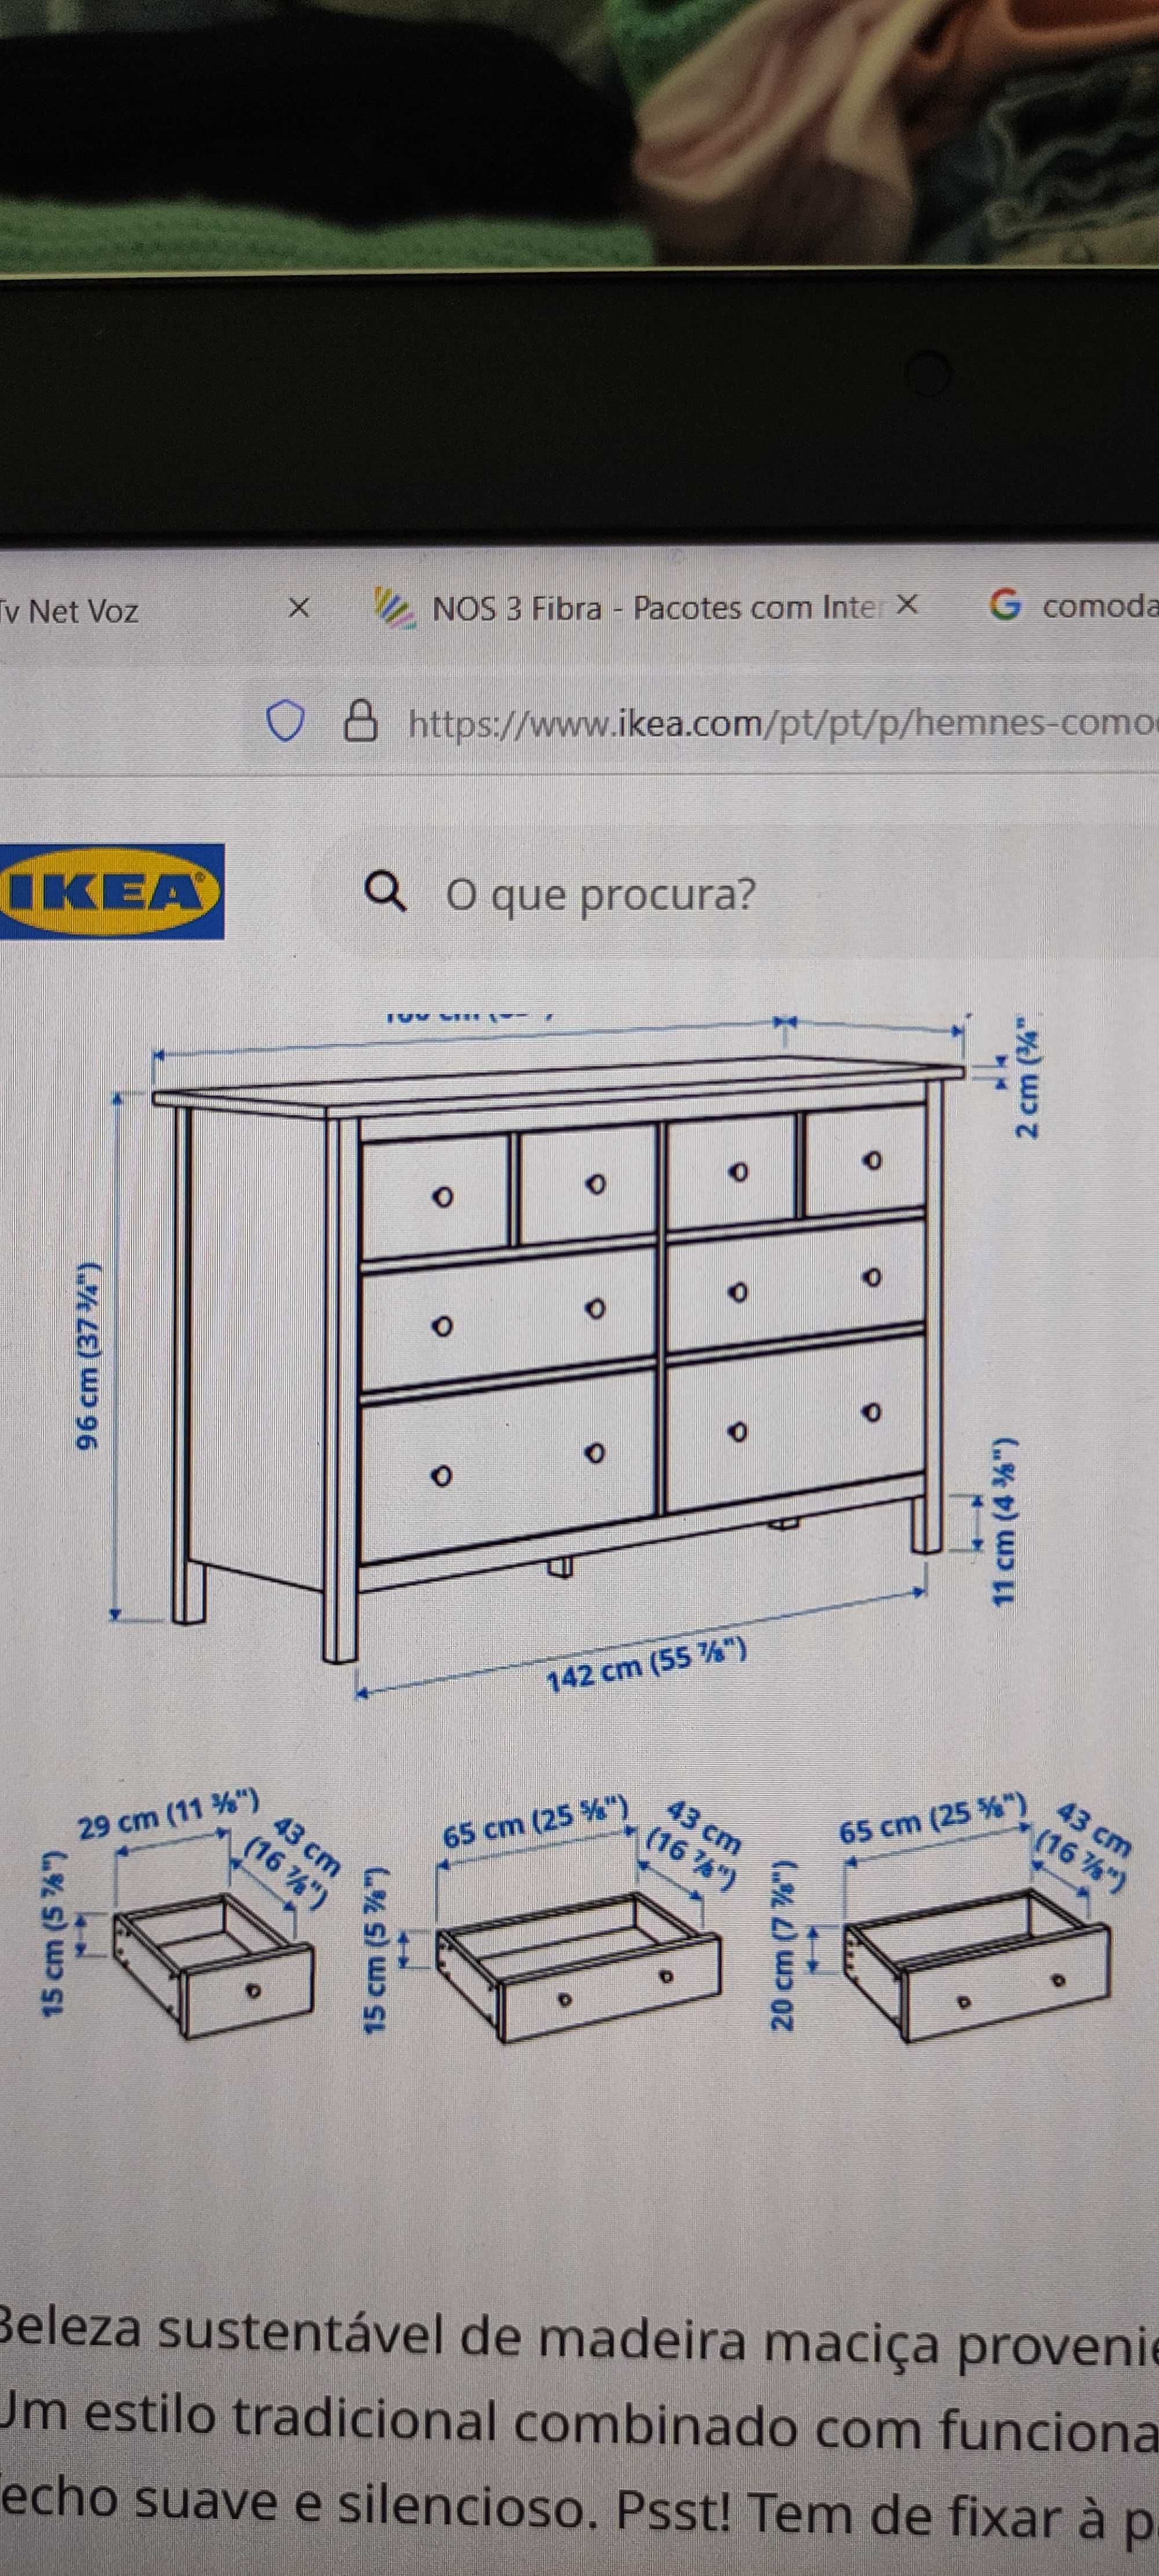 Cômoda Hemnes Ikea C/8 gavetas, Cor Preta 160x90 cm